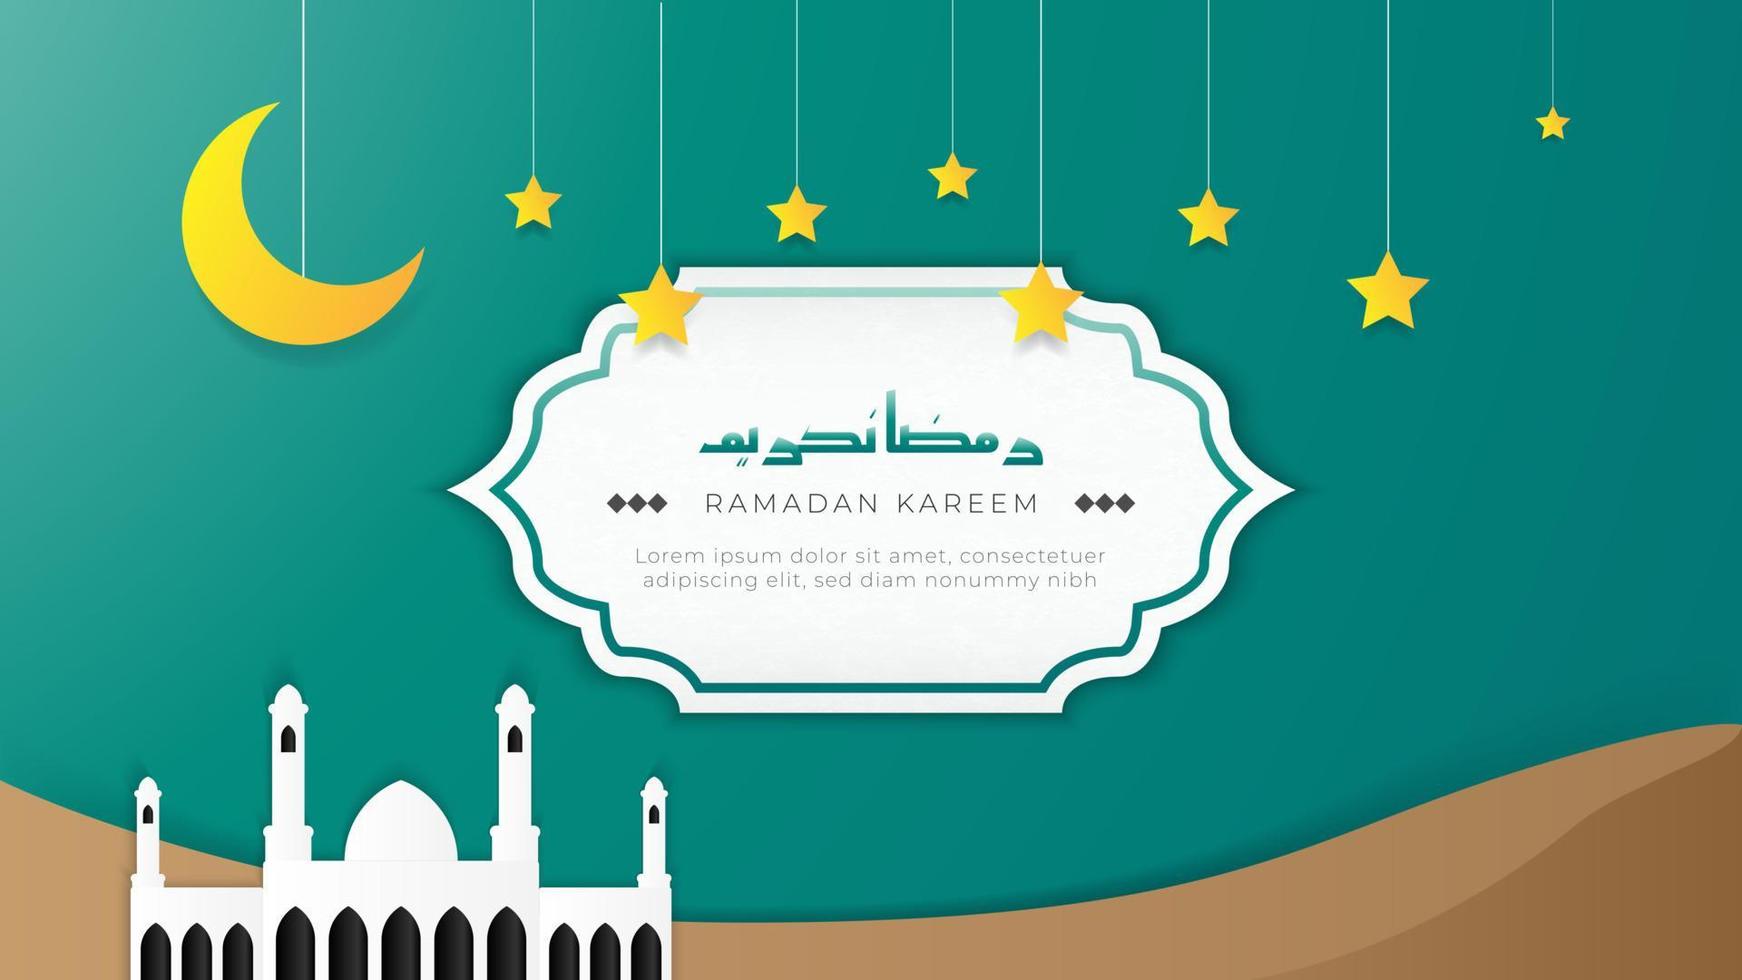 dekorativ ramadan kareem hälsning illustration vektor